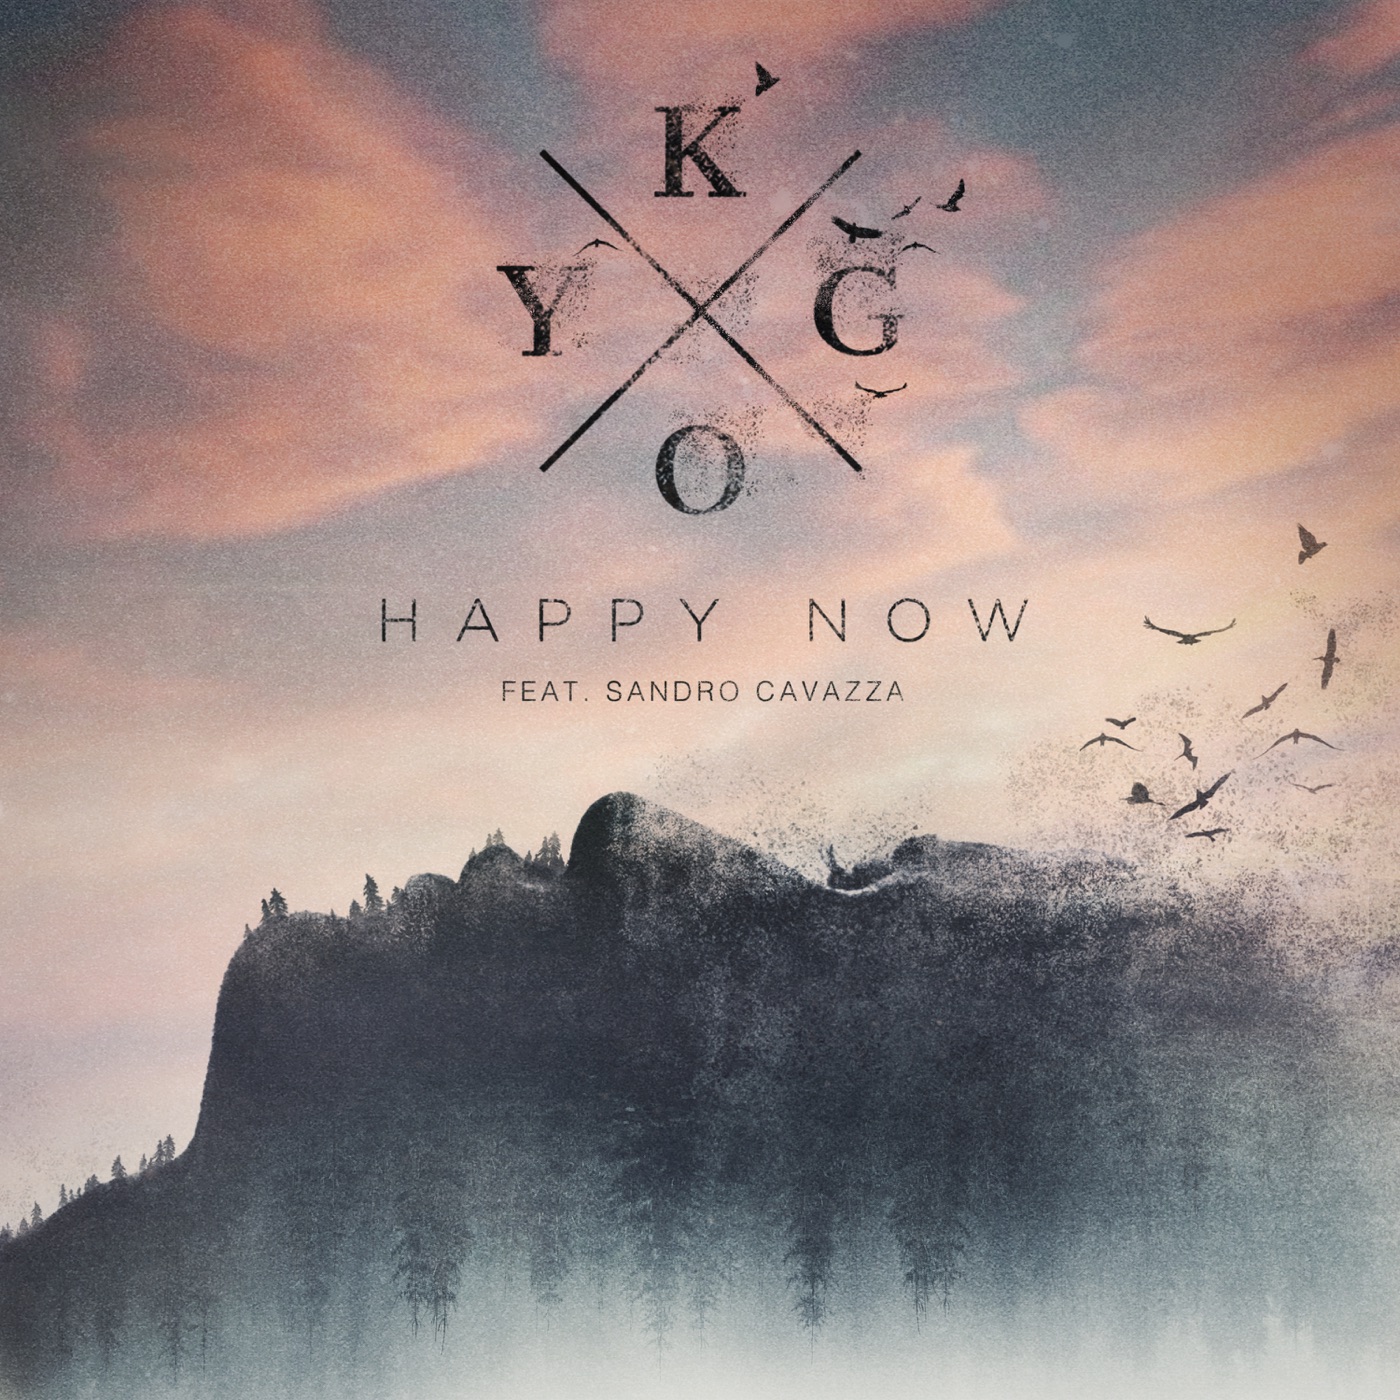 Kygo - Happy Now (feat. Sandro Cavazza) - Single